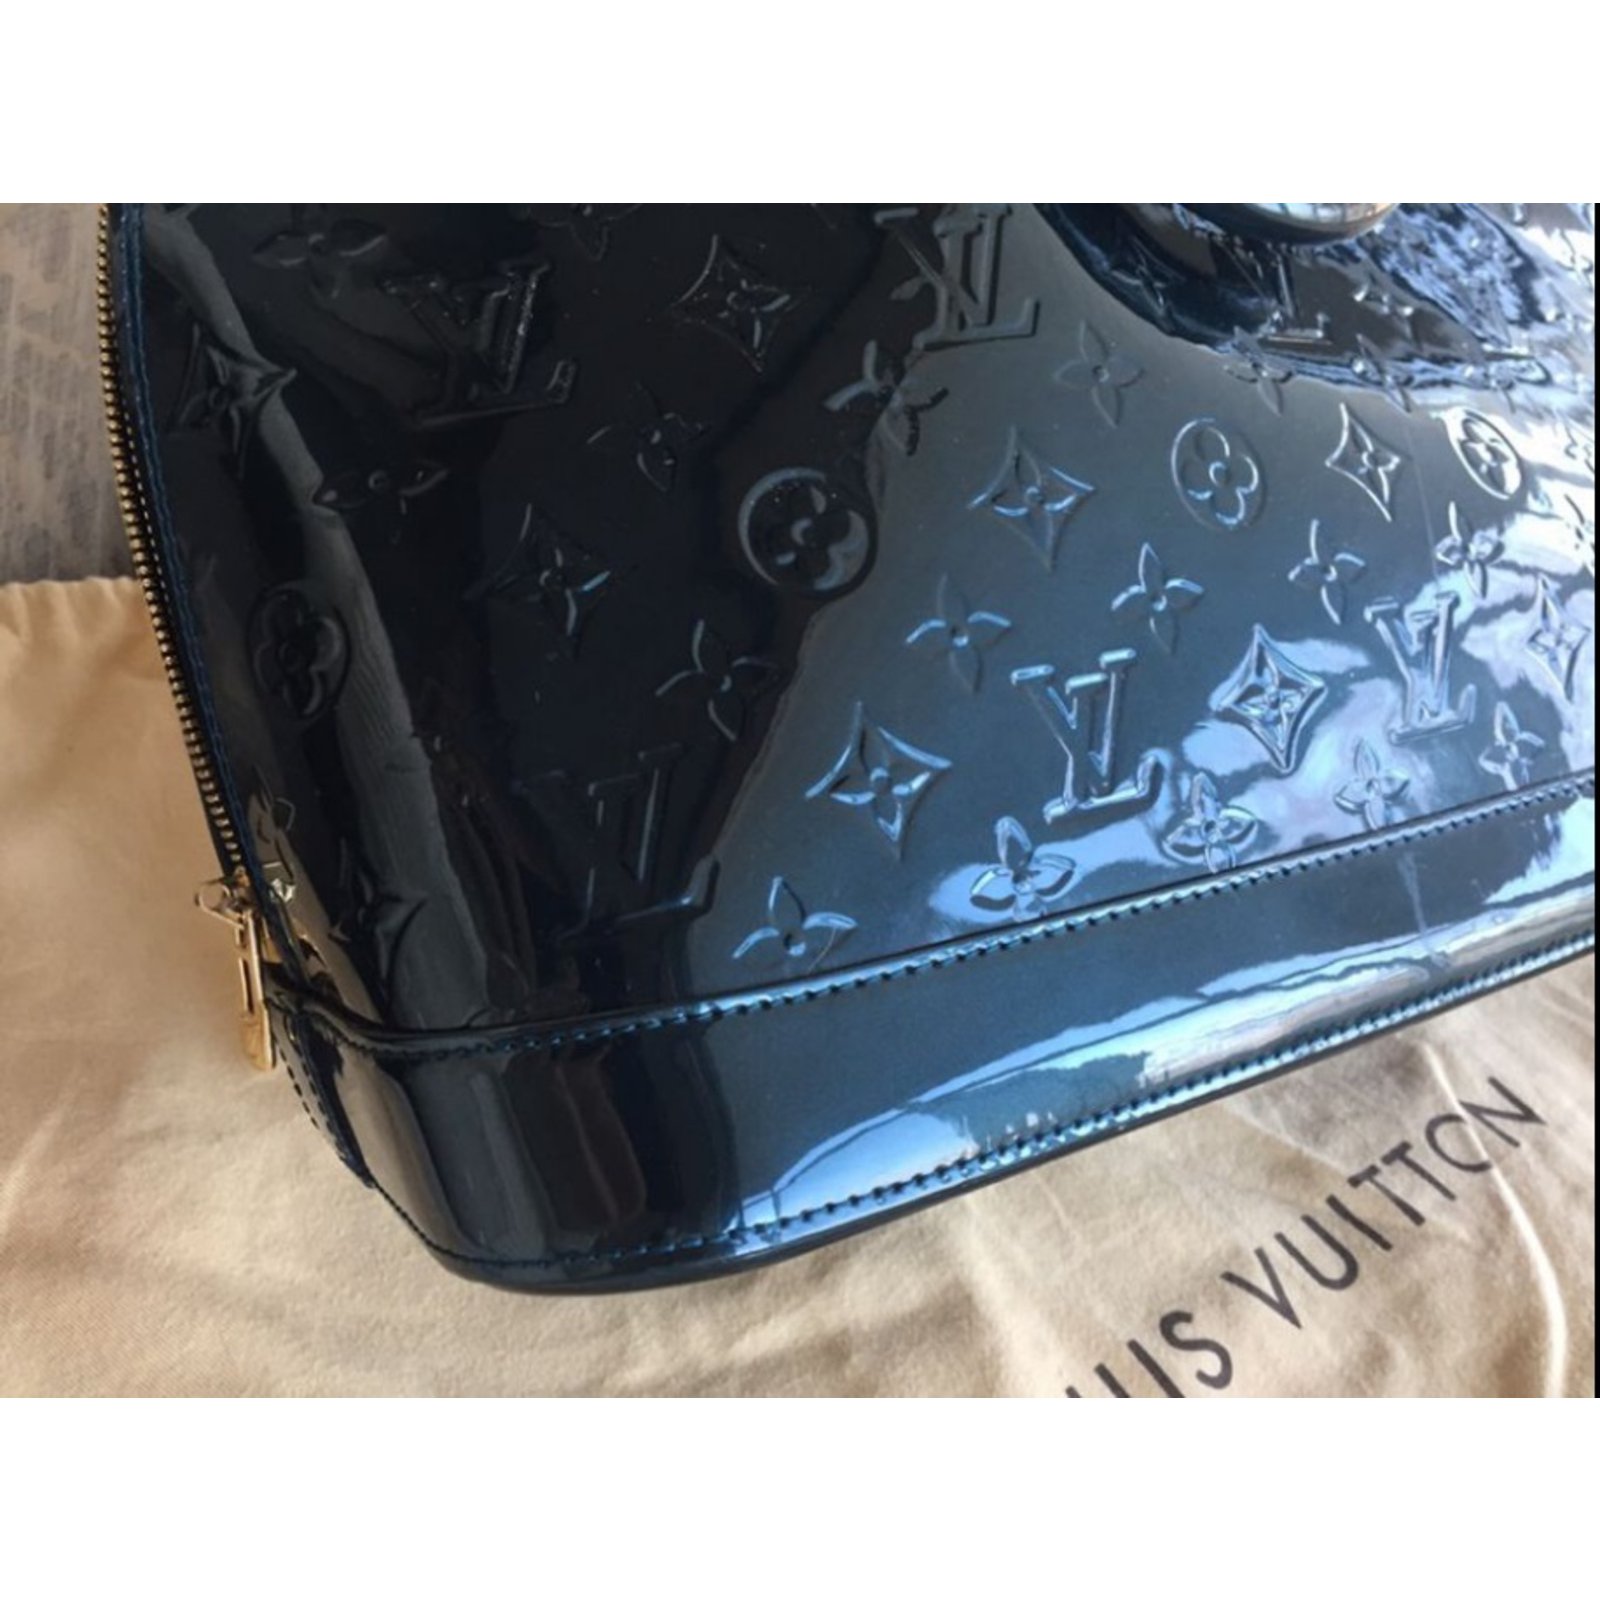 Louis Vuitton Blue Nuit Monogram Vernis Alma GM Bag in United States